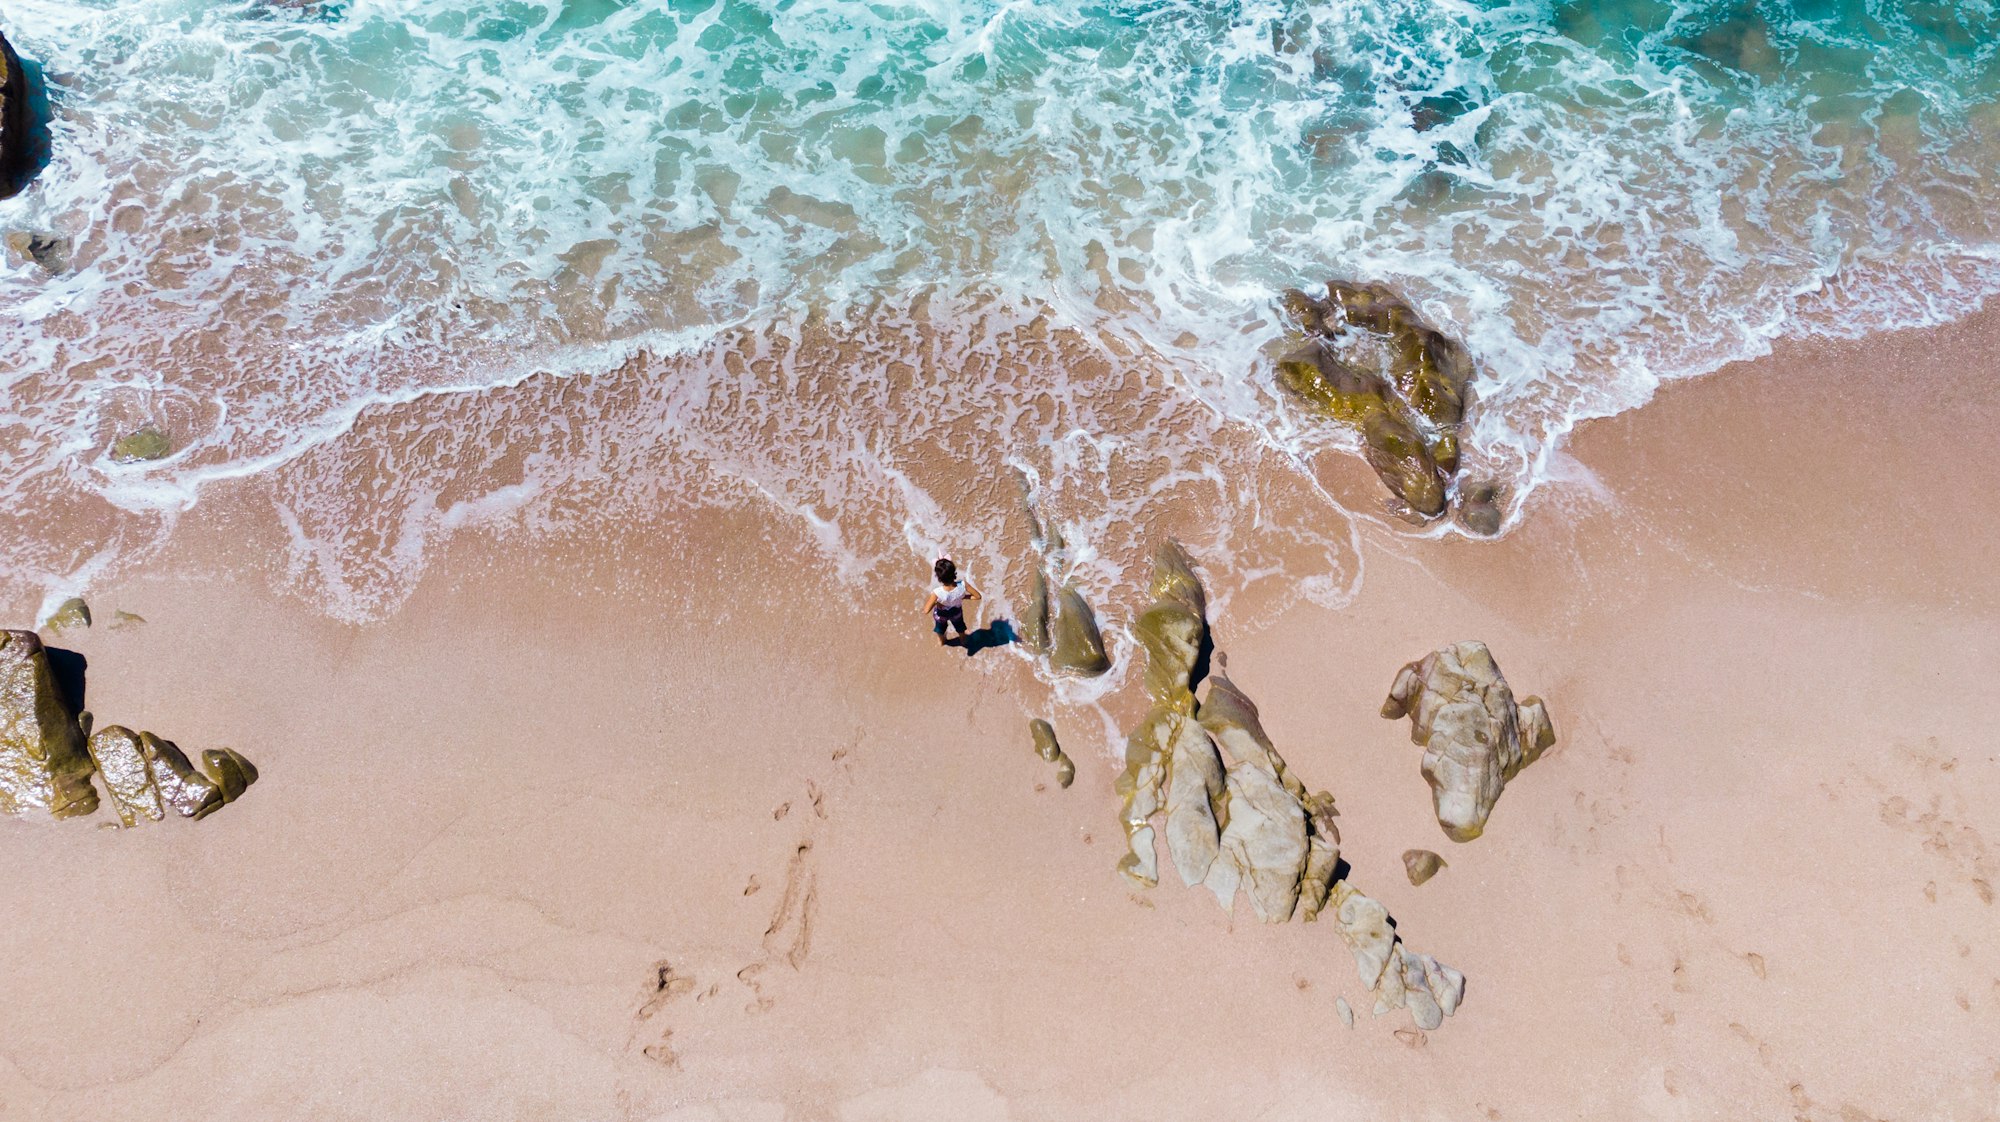 Mazatlan has five beaches certified in different categories